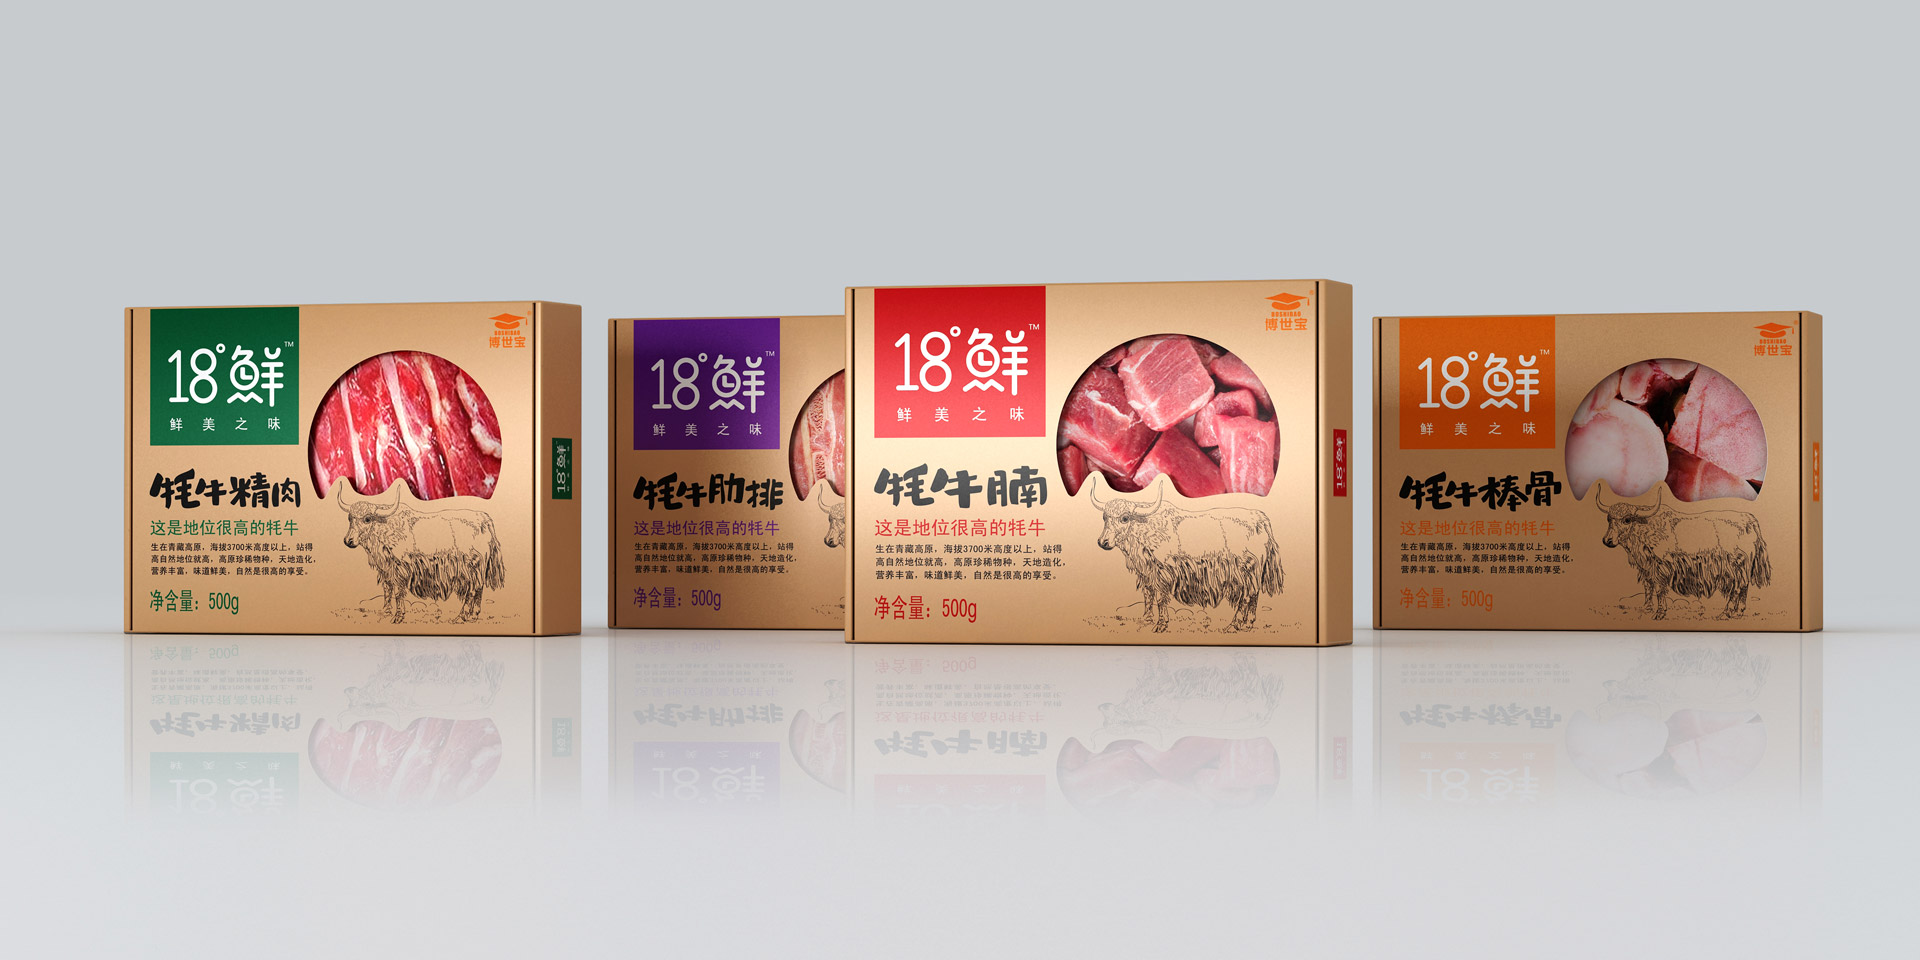 包装设计,上海包装设计,食品包装设计,上海包装设计公司,冷鲜食品包装设计,上海食品包装设计公司,产品包装设计公司